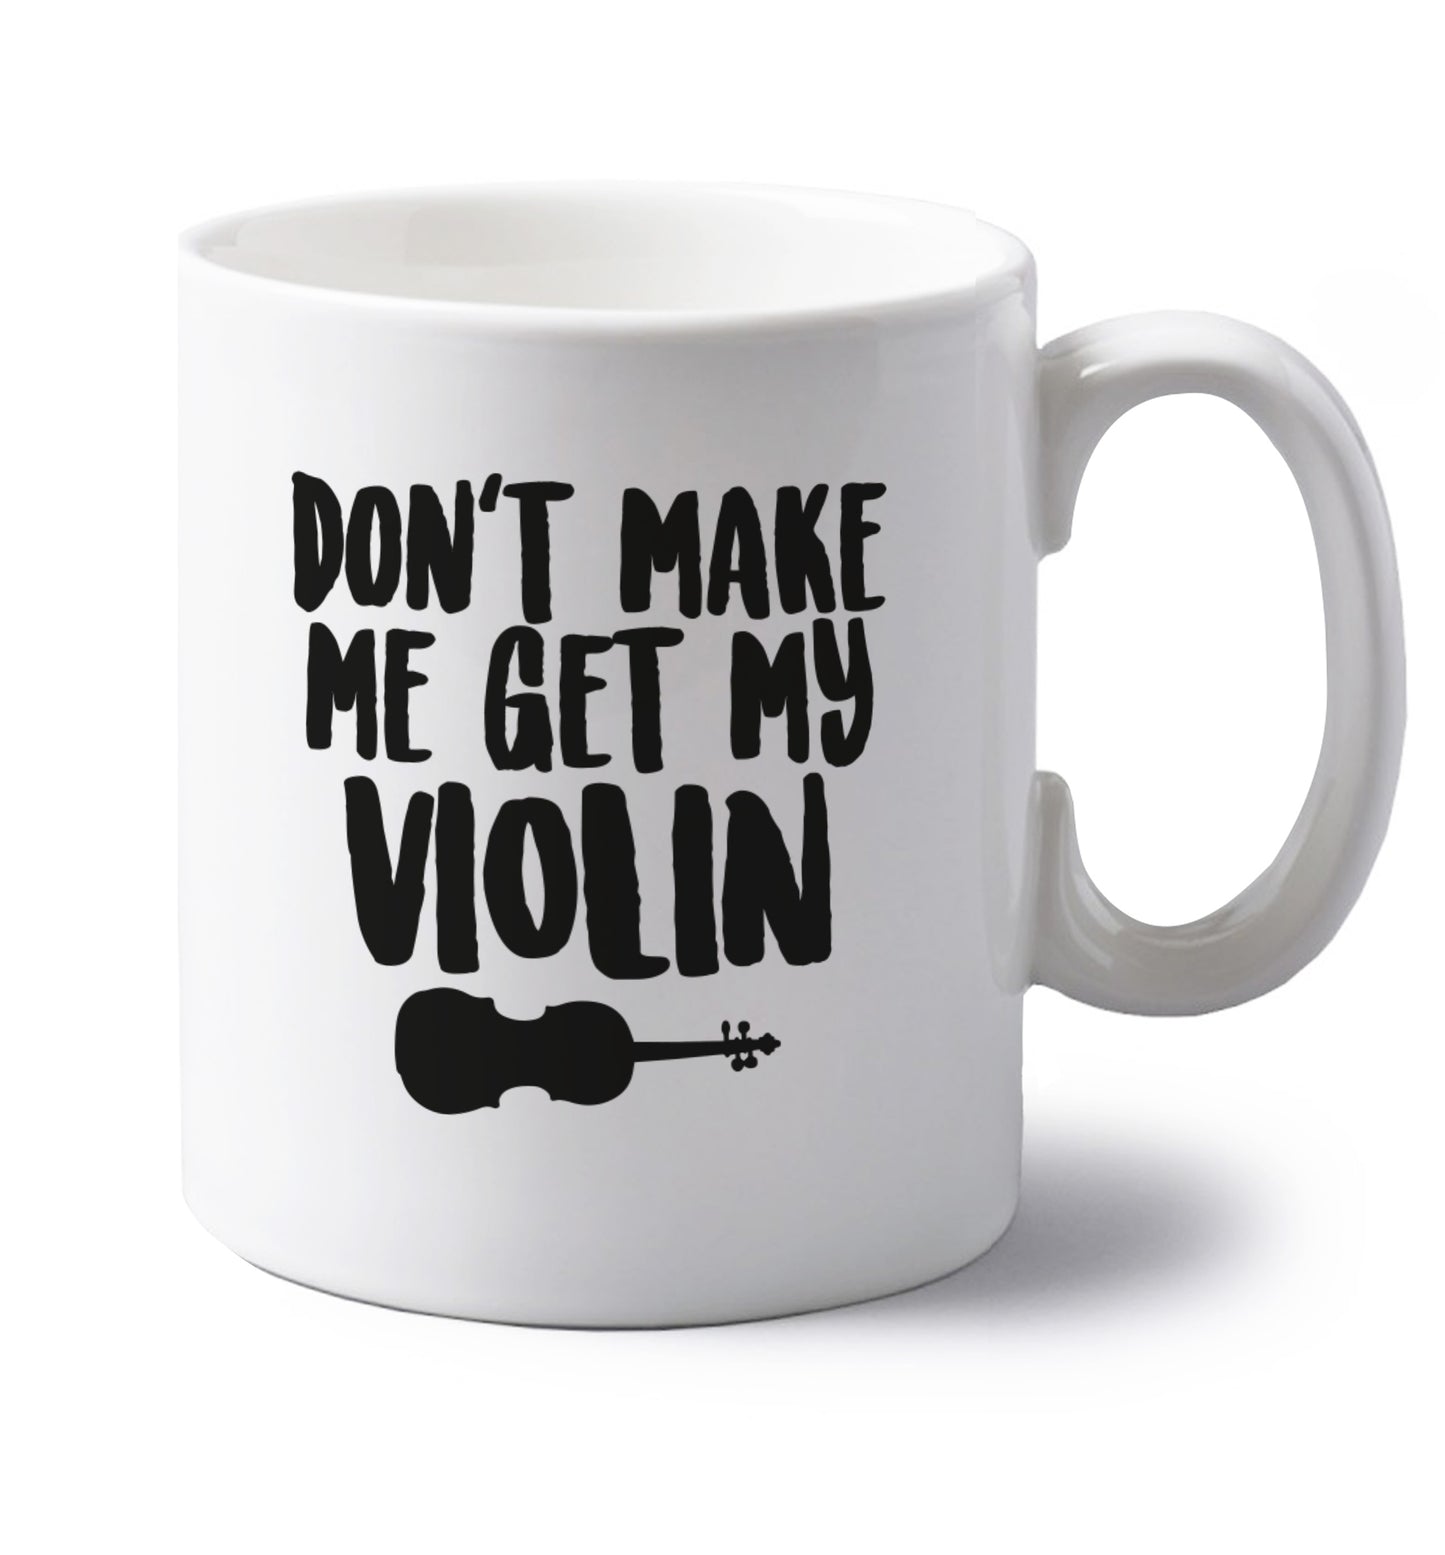 Don't make me get my violin left handed white ceramic mug 